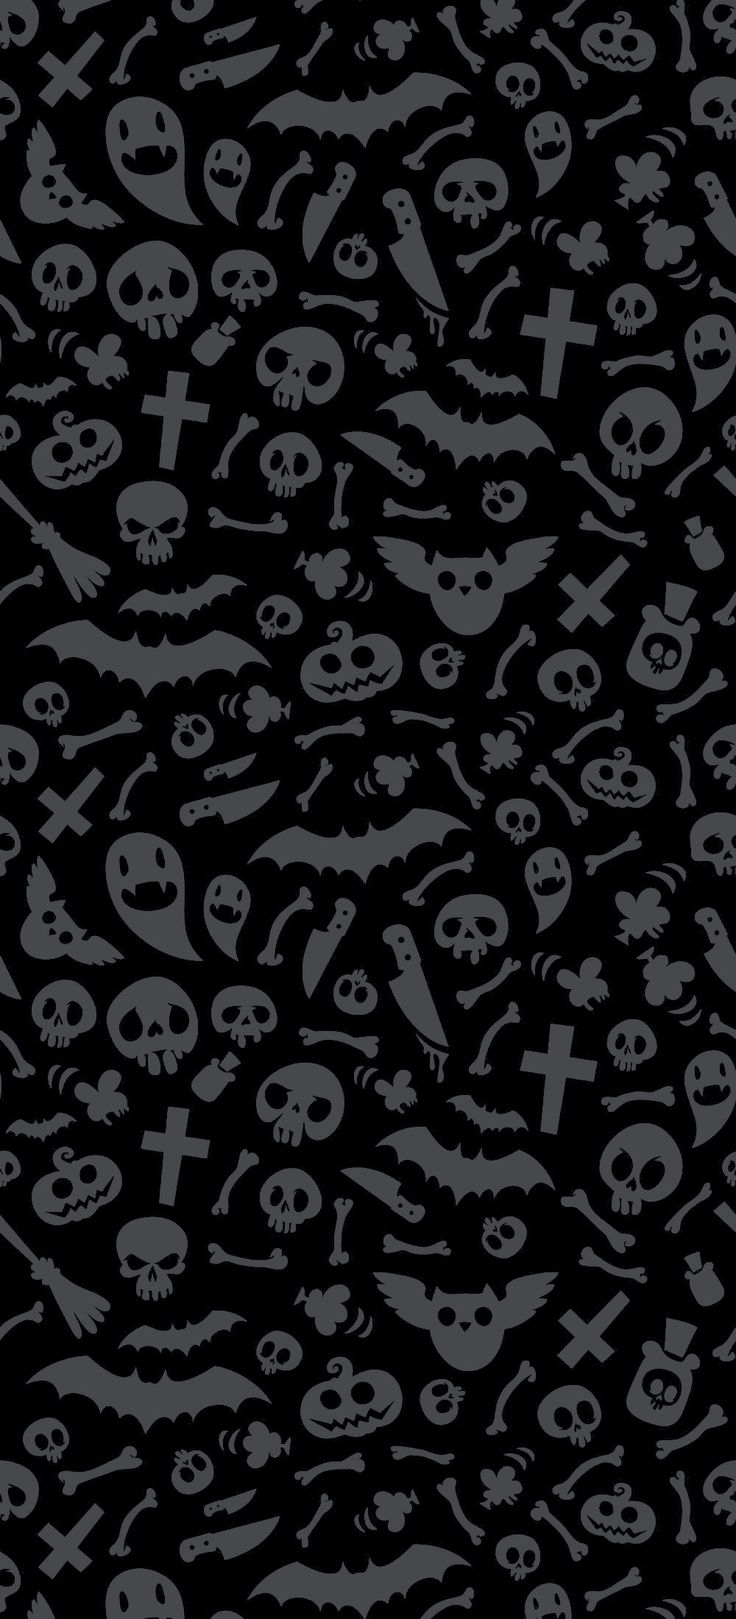 halloween skulls phone wallpaper. Halloween wallpaper iphone background, Halloween wallpaper background, Halloween wallpaper iphone